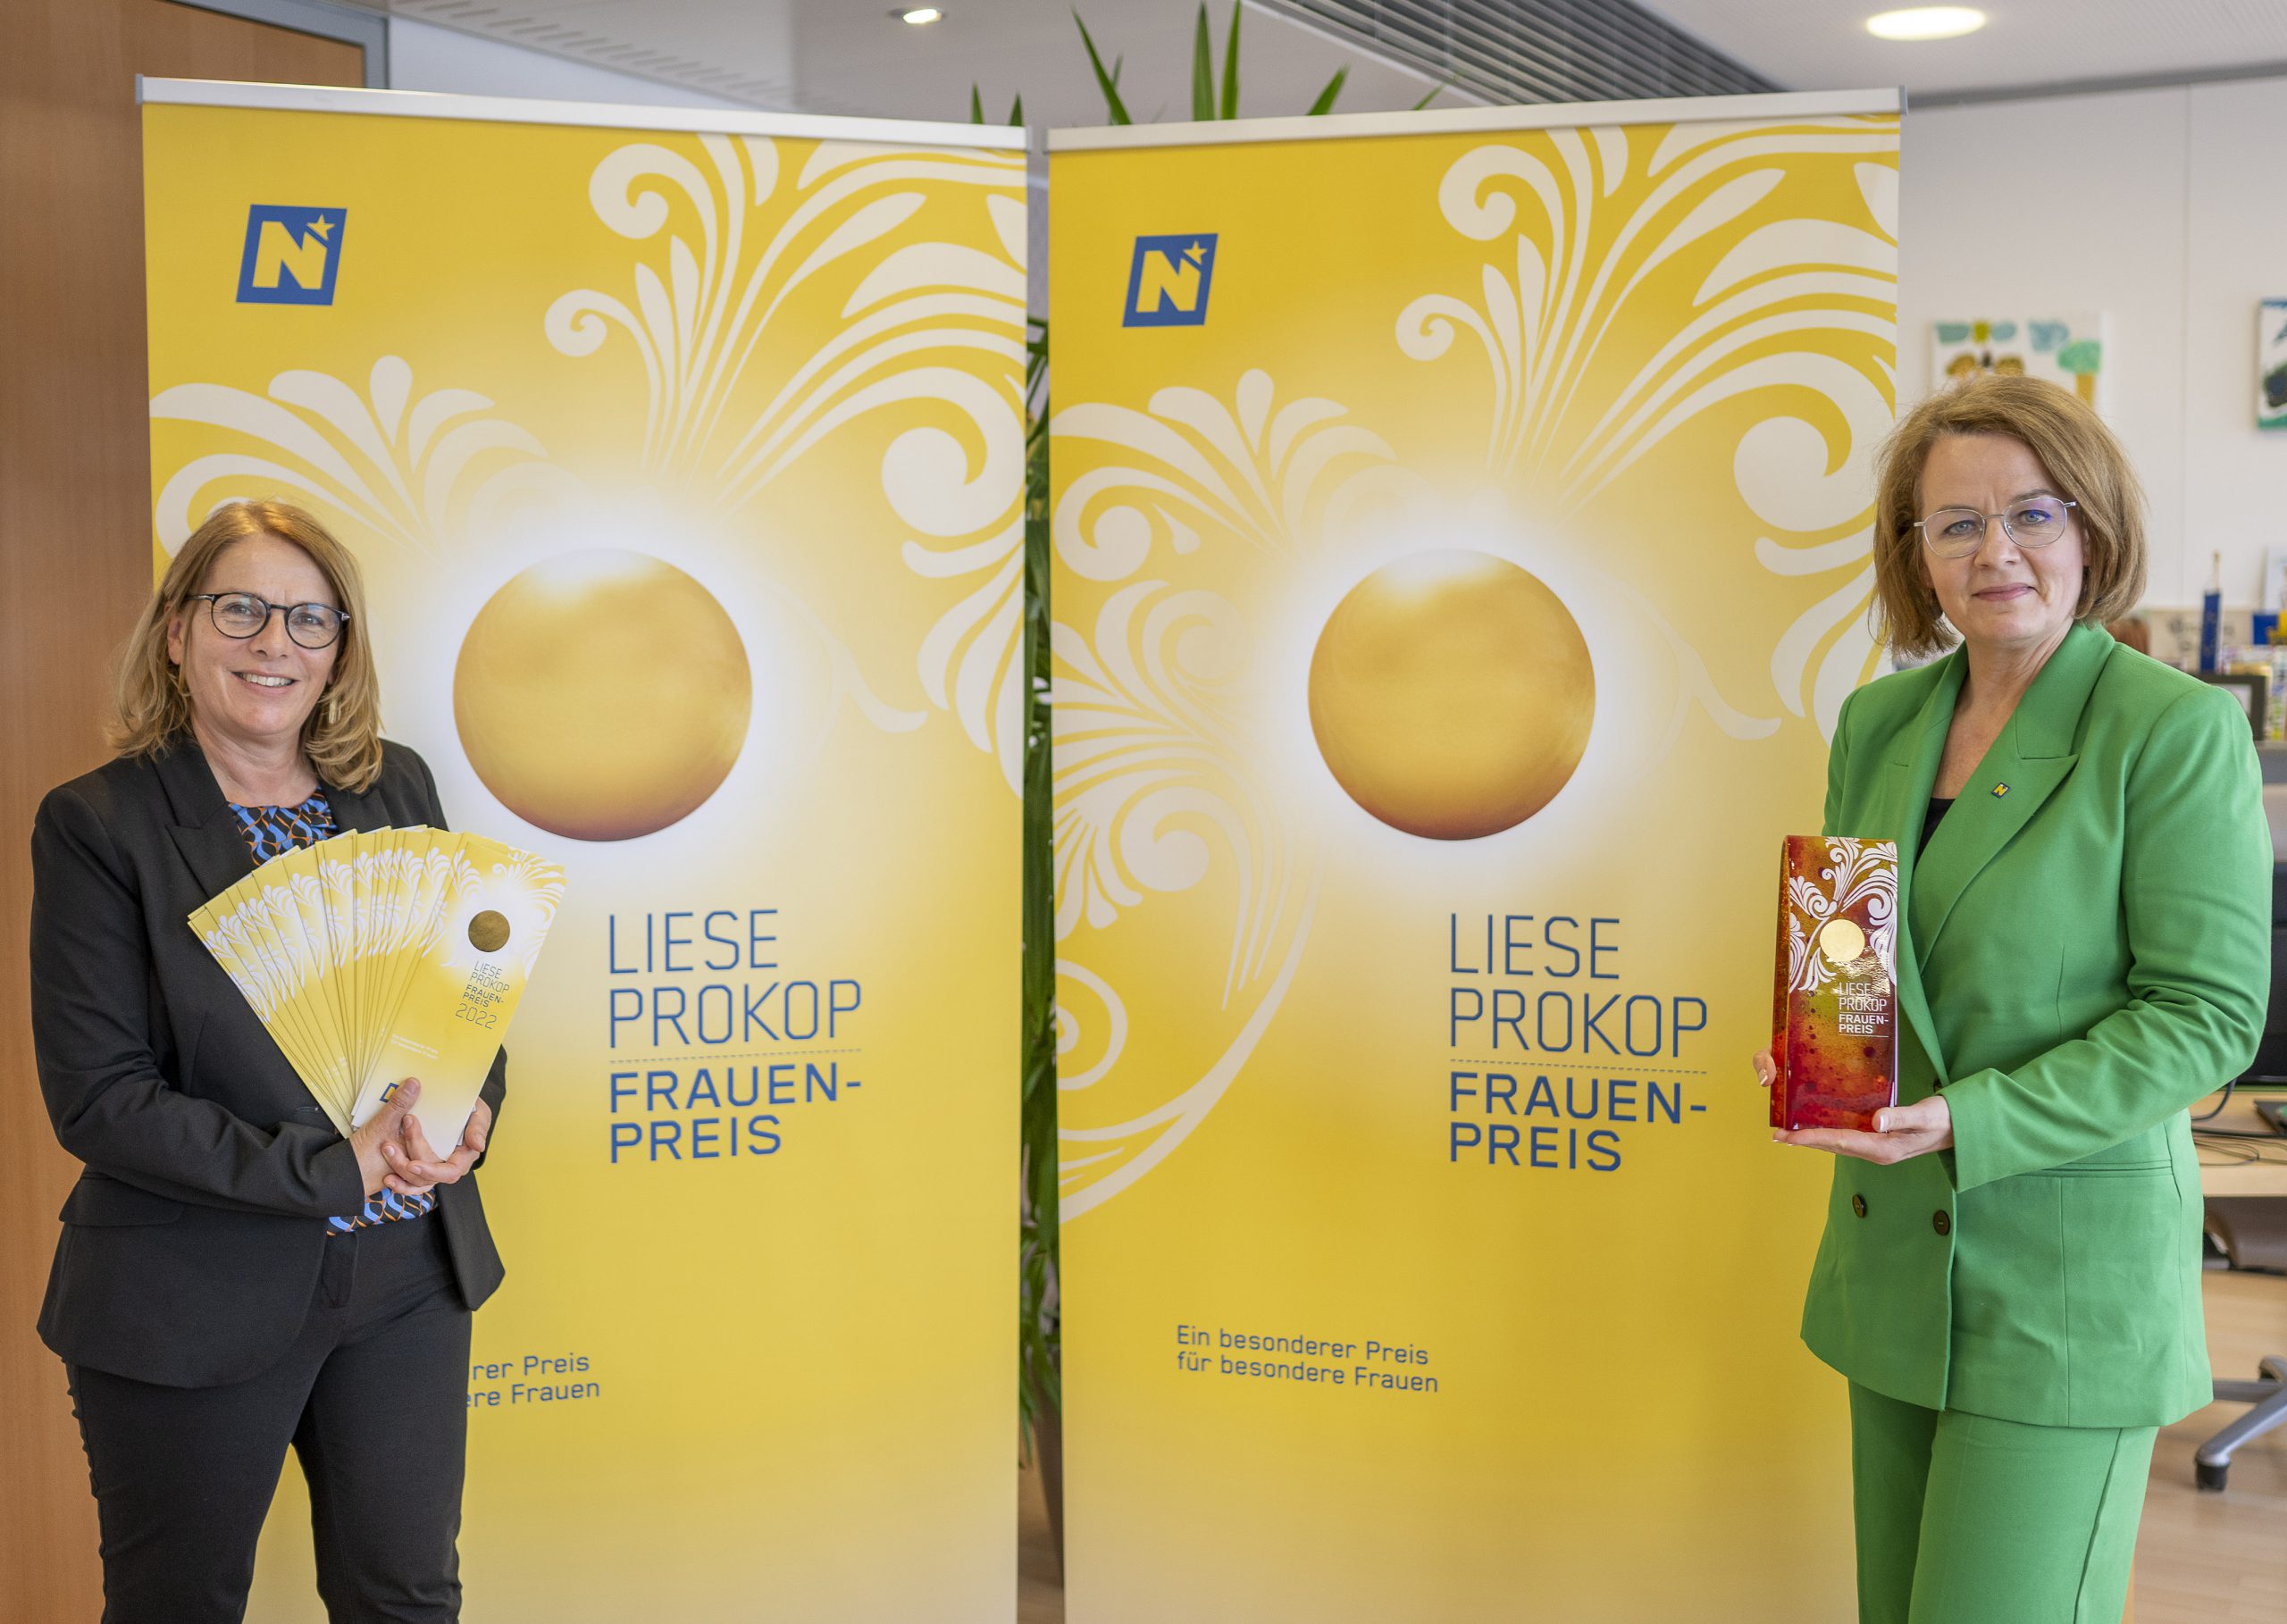 Liese Prokop-Frauenpreis wird zum fünften Mal vergeben